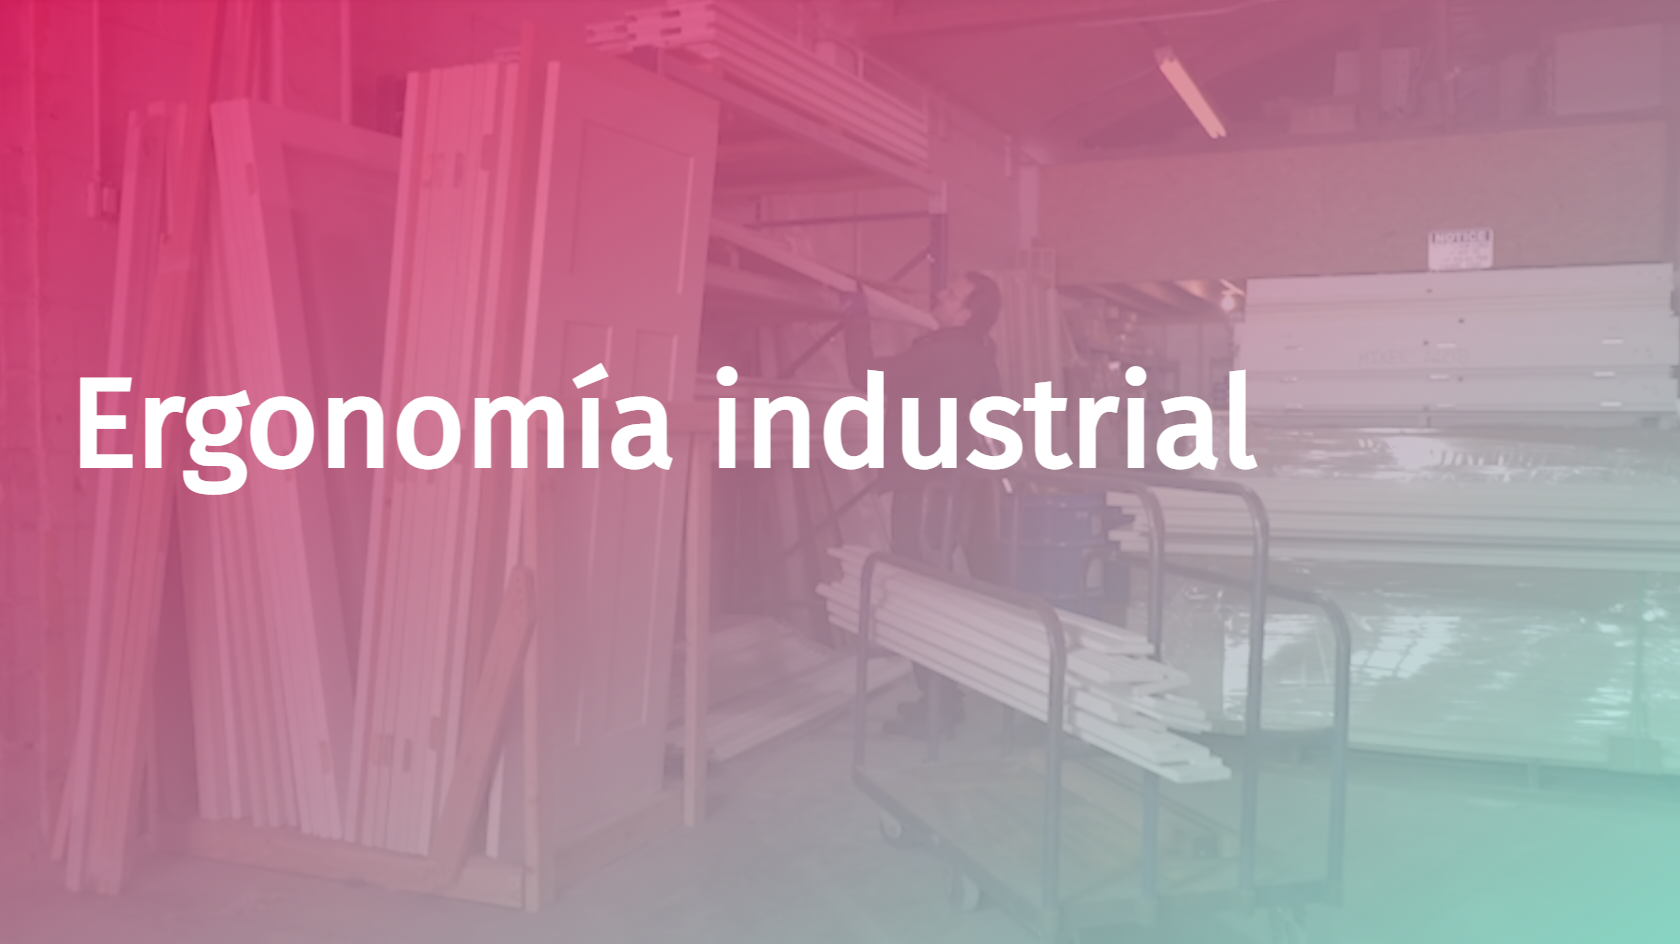 Spanish - Industrial Ergonomics